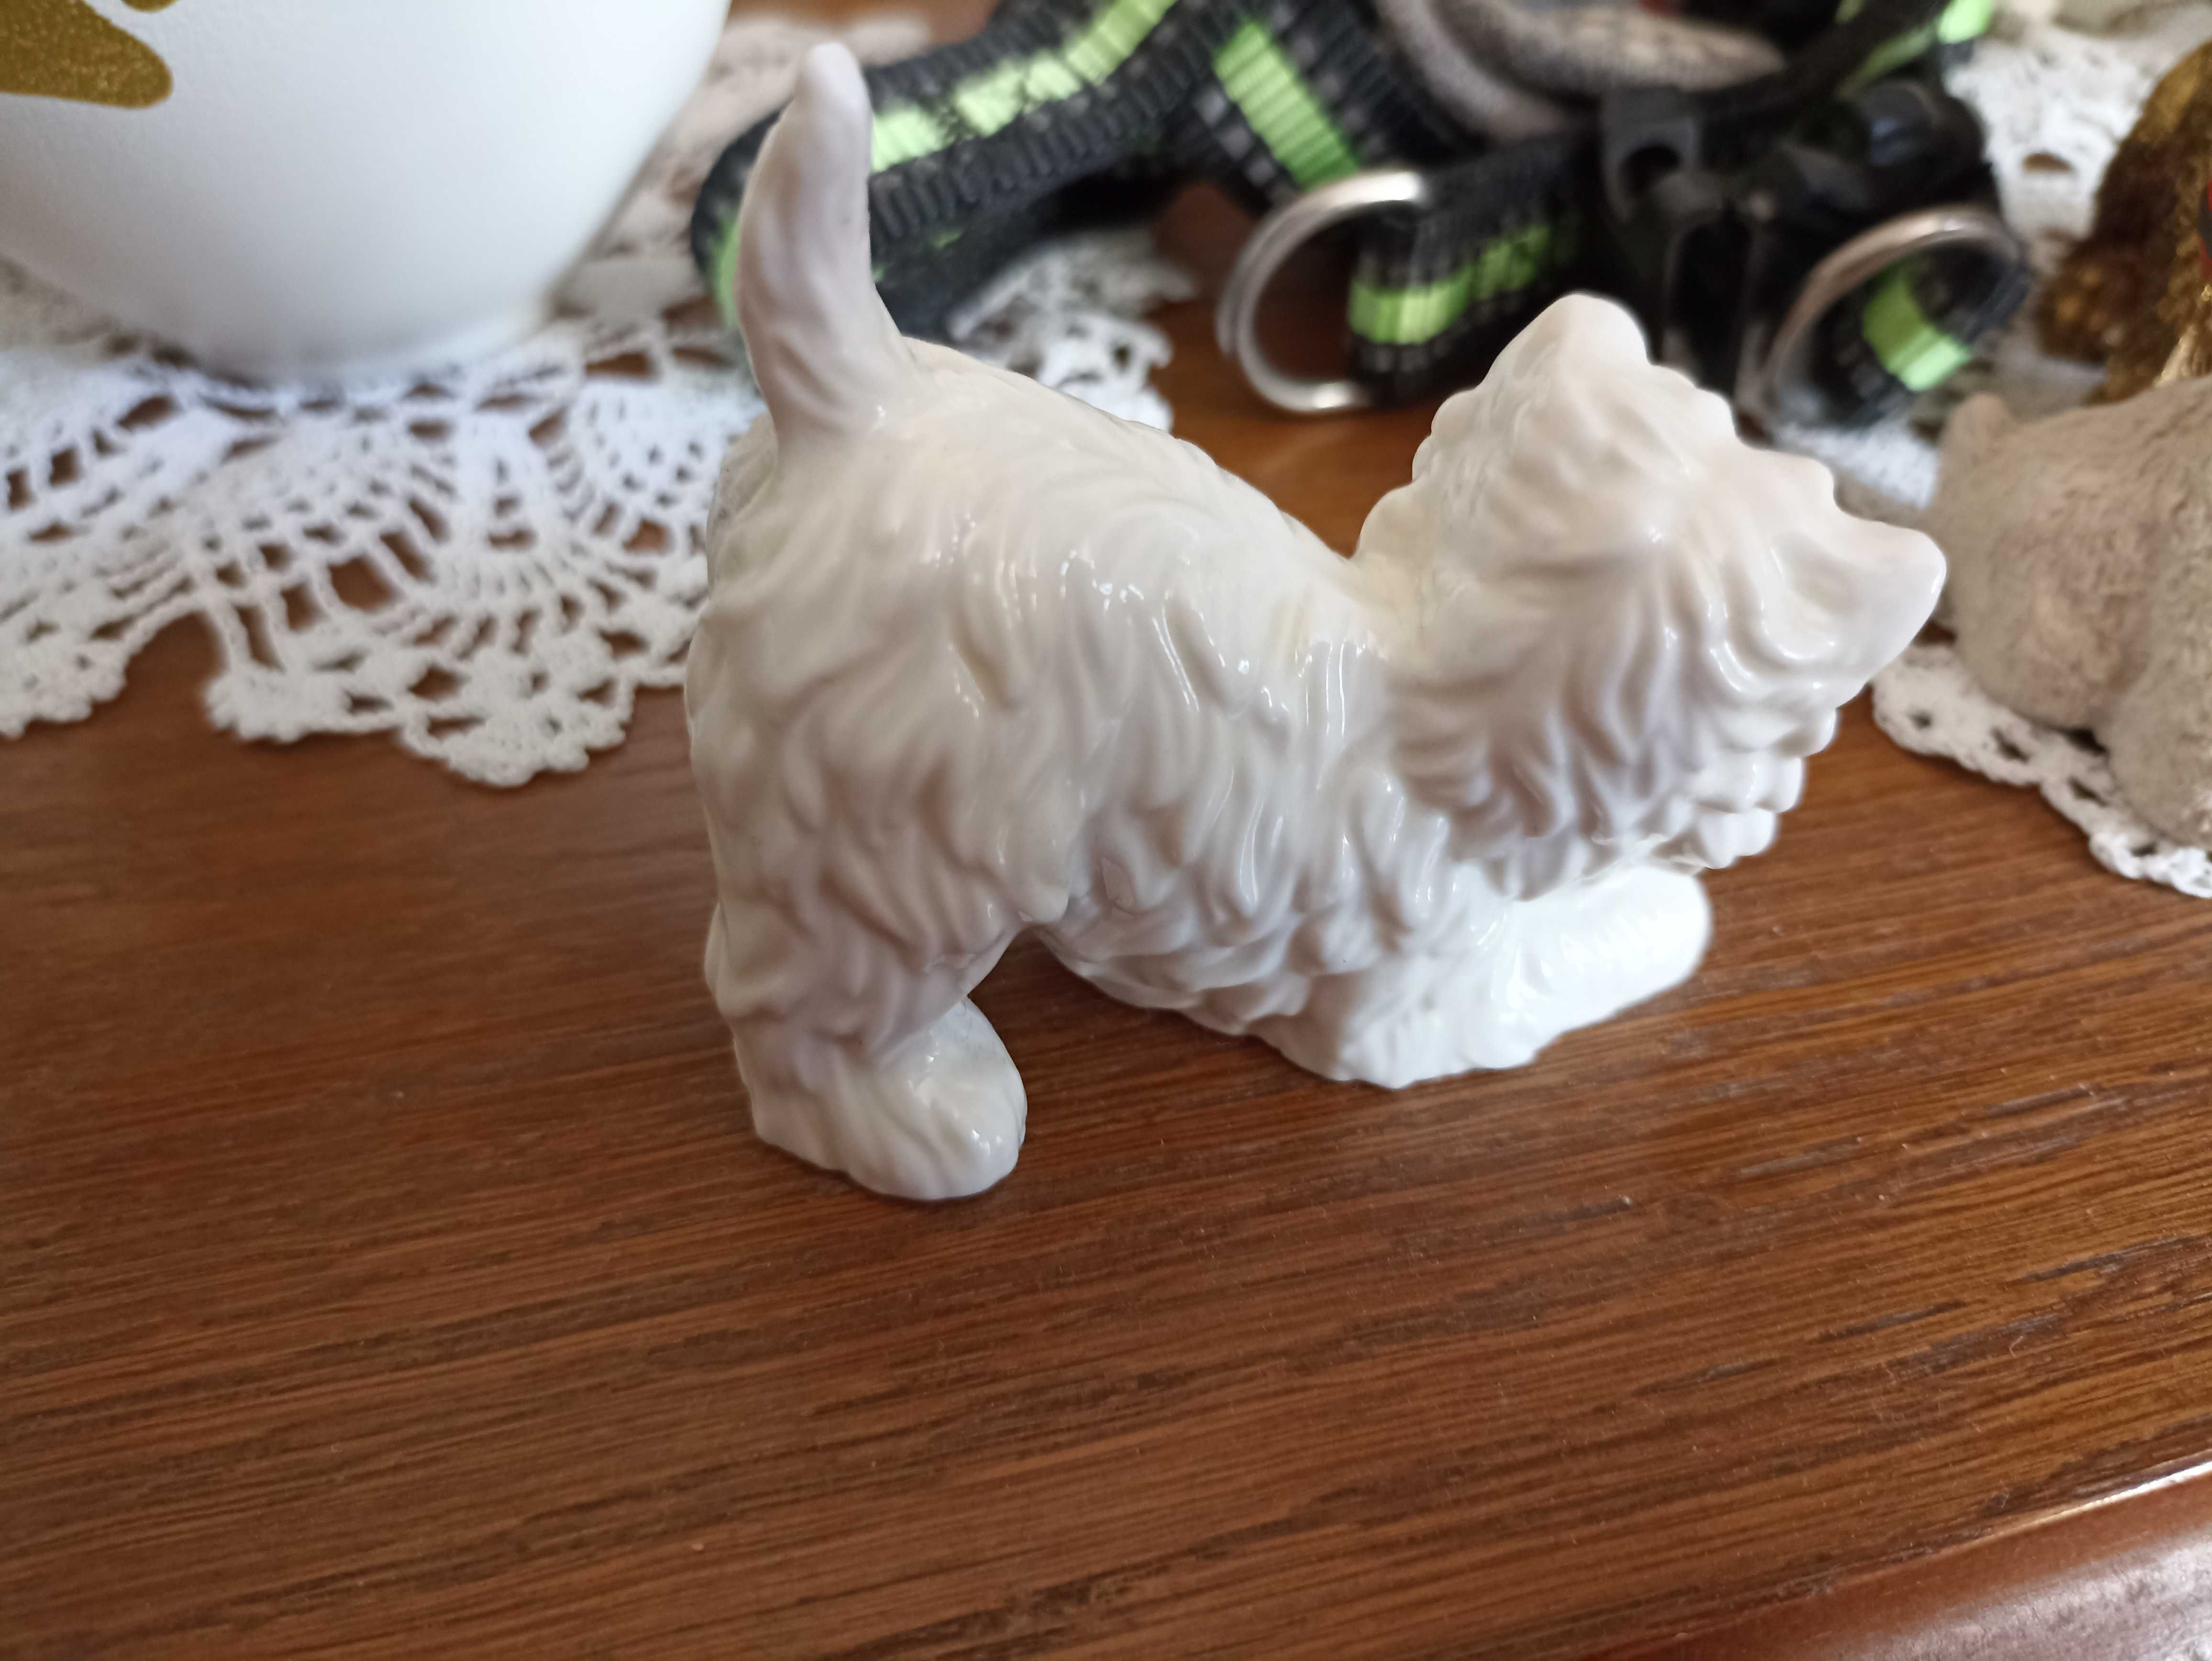 Piękna figurka  west highland white terrier